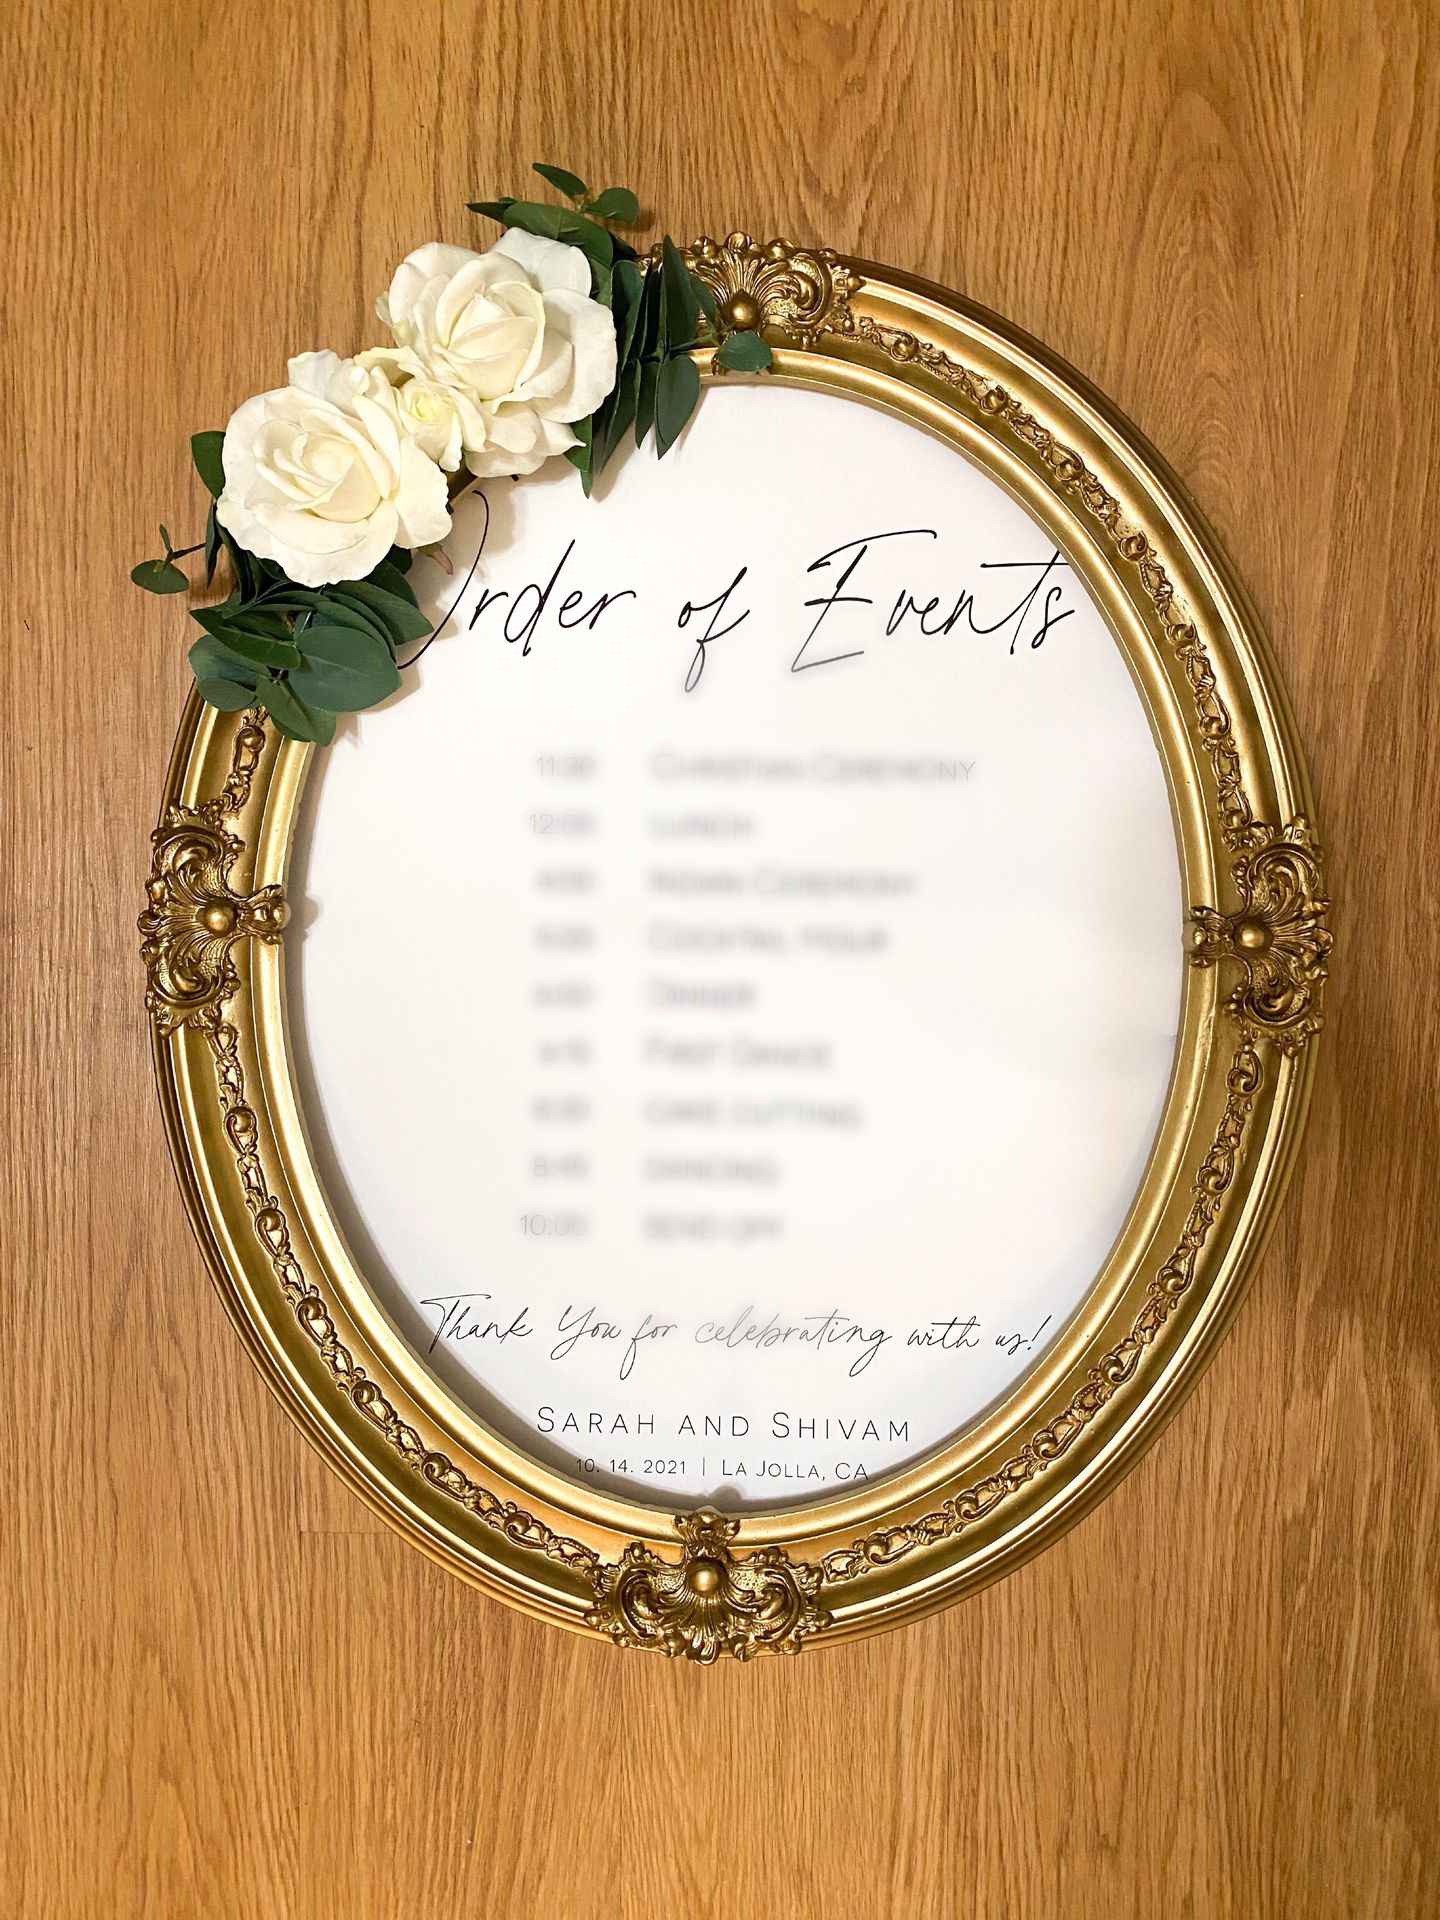 Gold Frames For Wedding Sign 